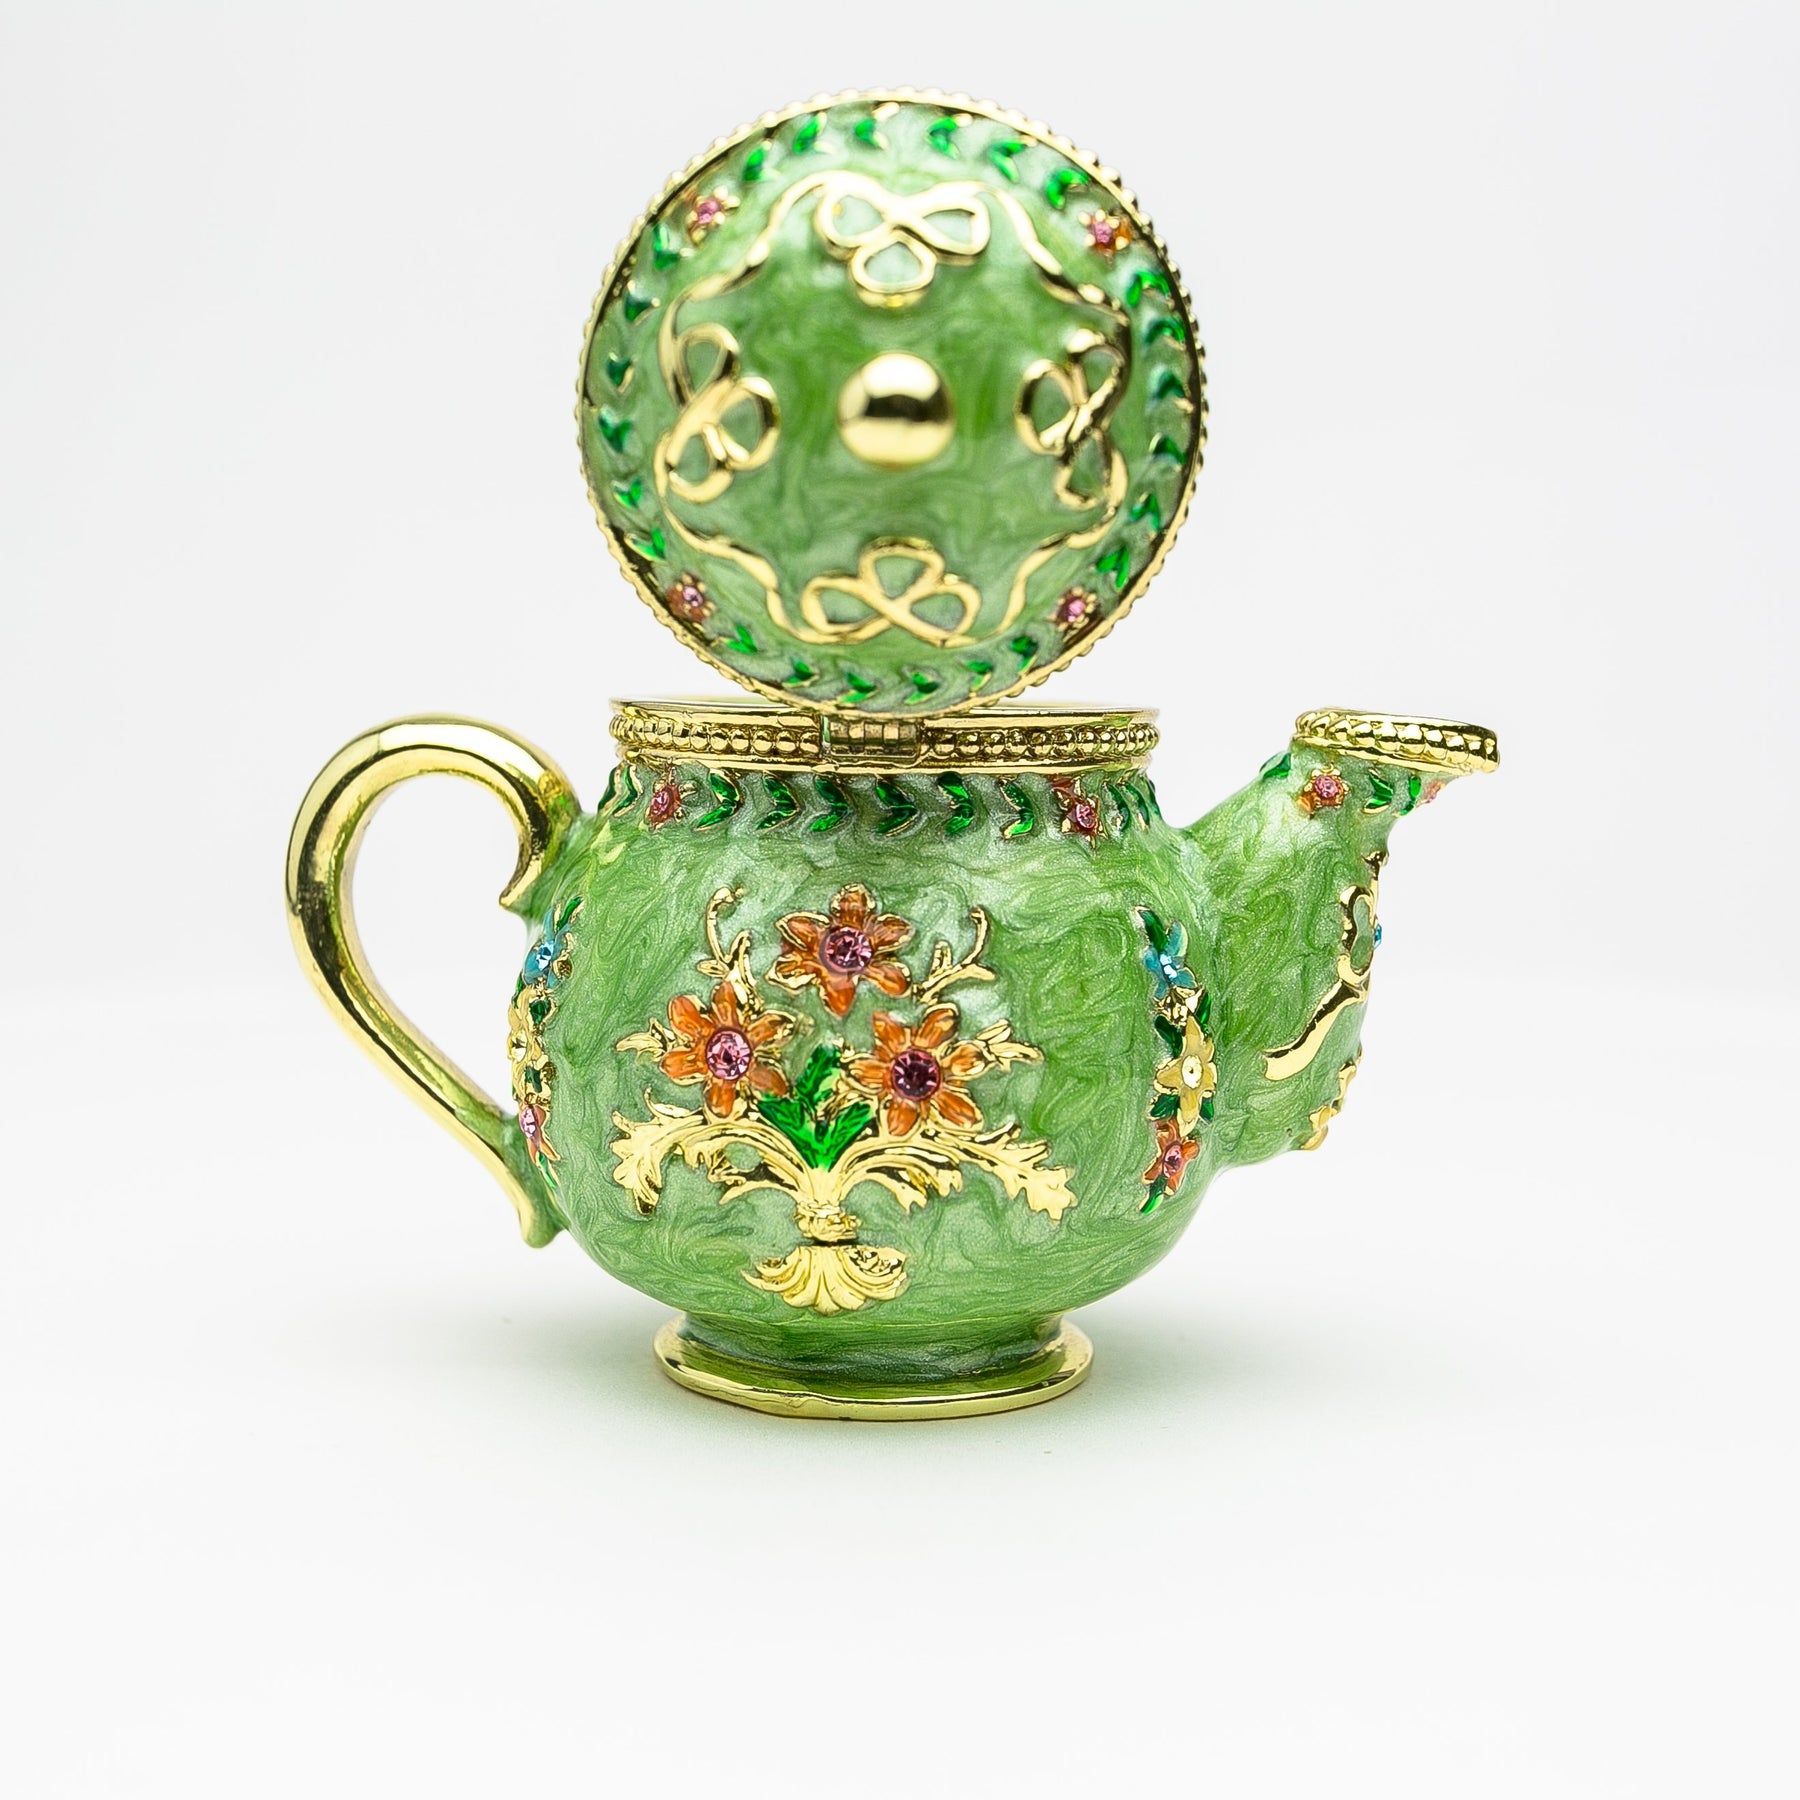 Green Teapot  Keren Kopal